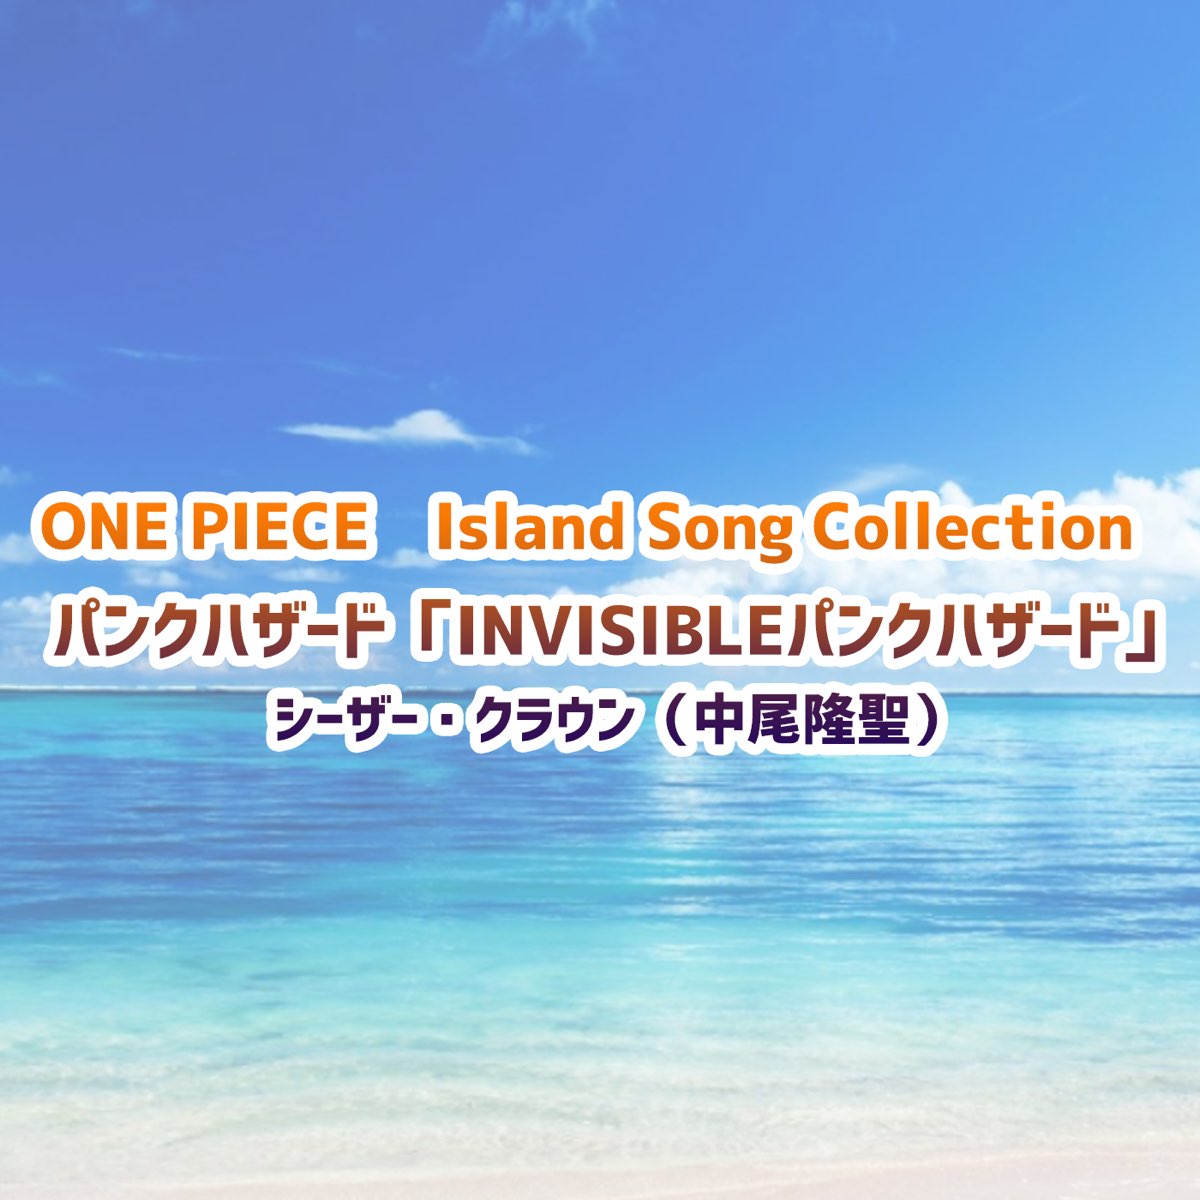 中尾隆聖の One Piece Island Song Collection パンクハザード Invisibleパンクハザード Single をitunesで